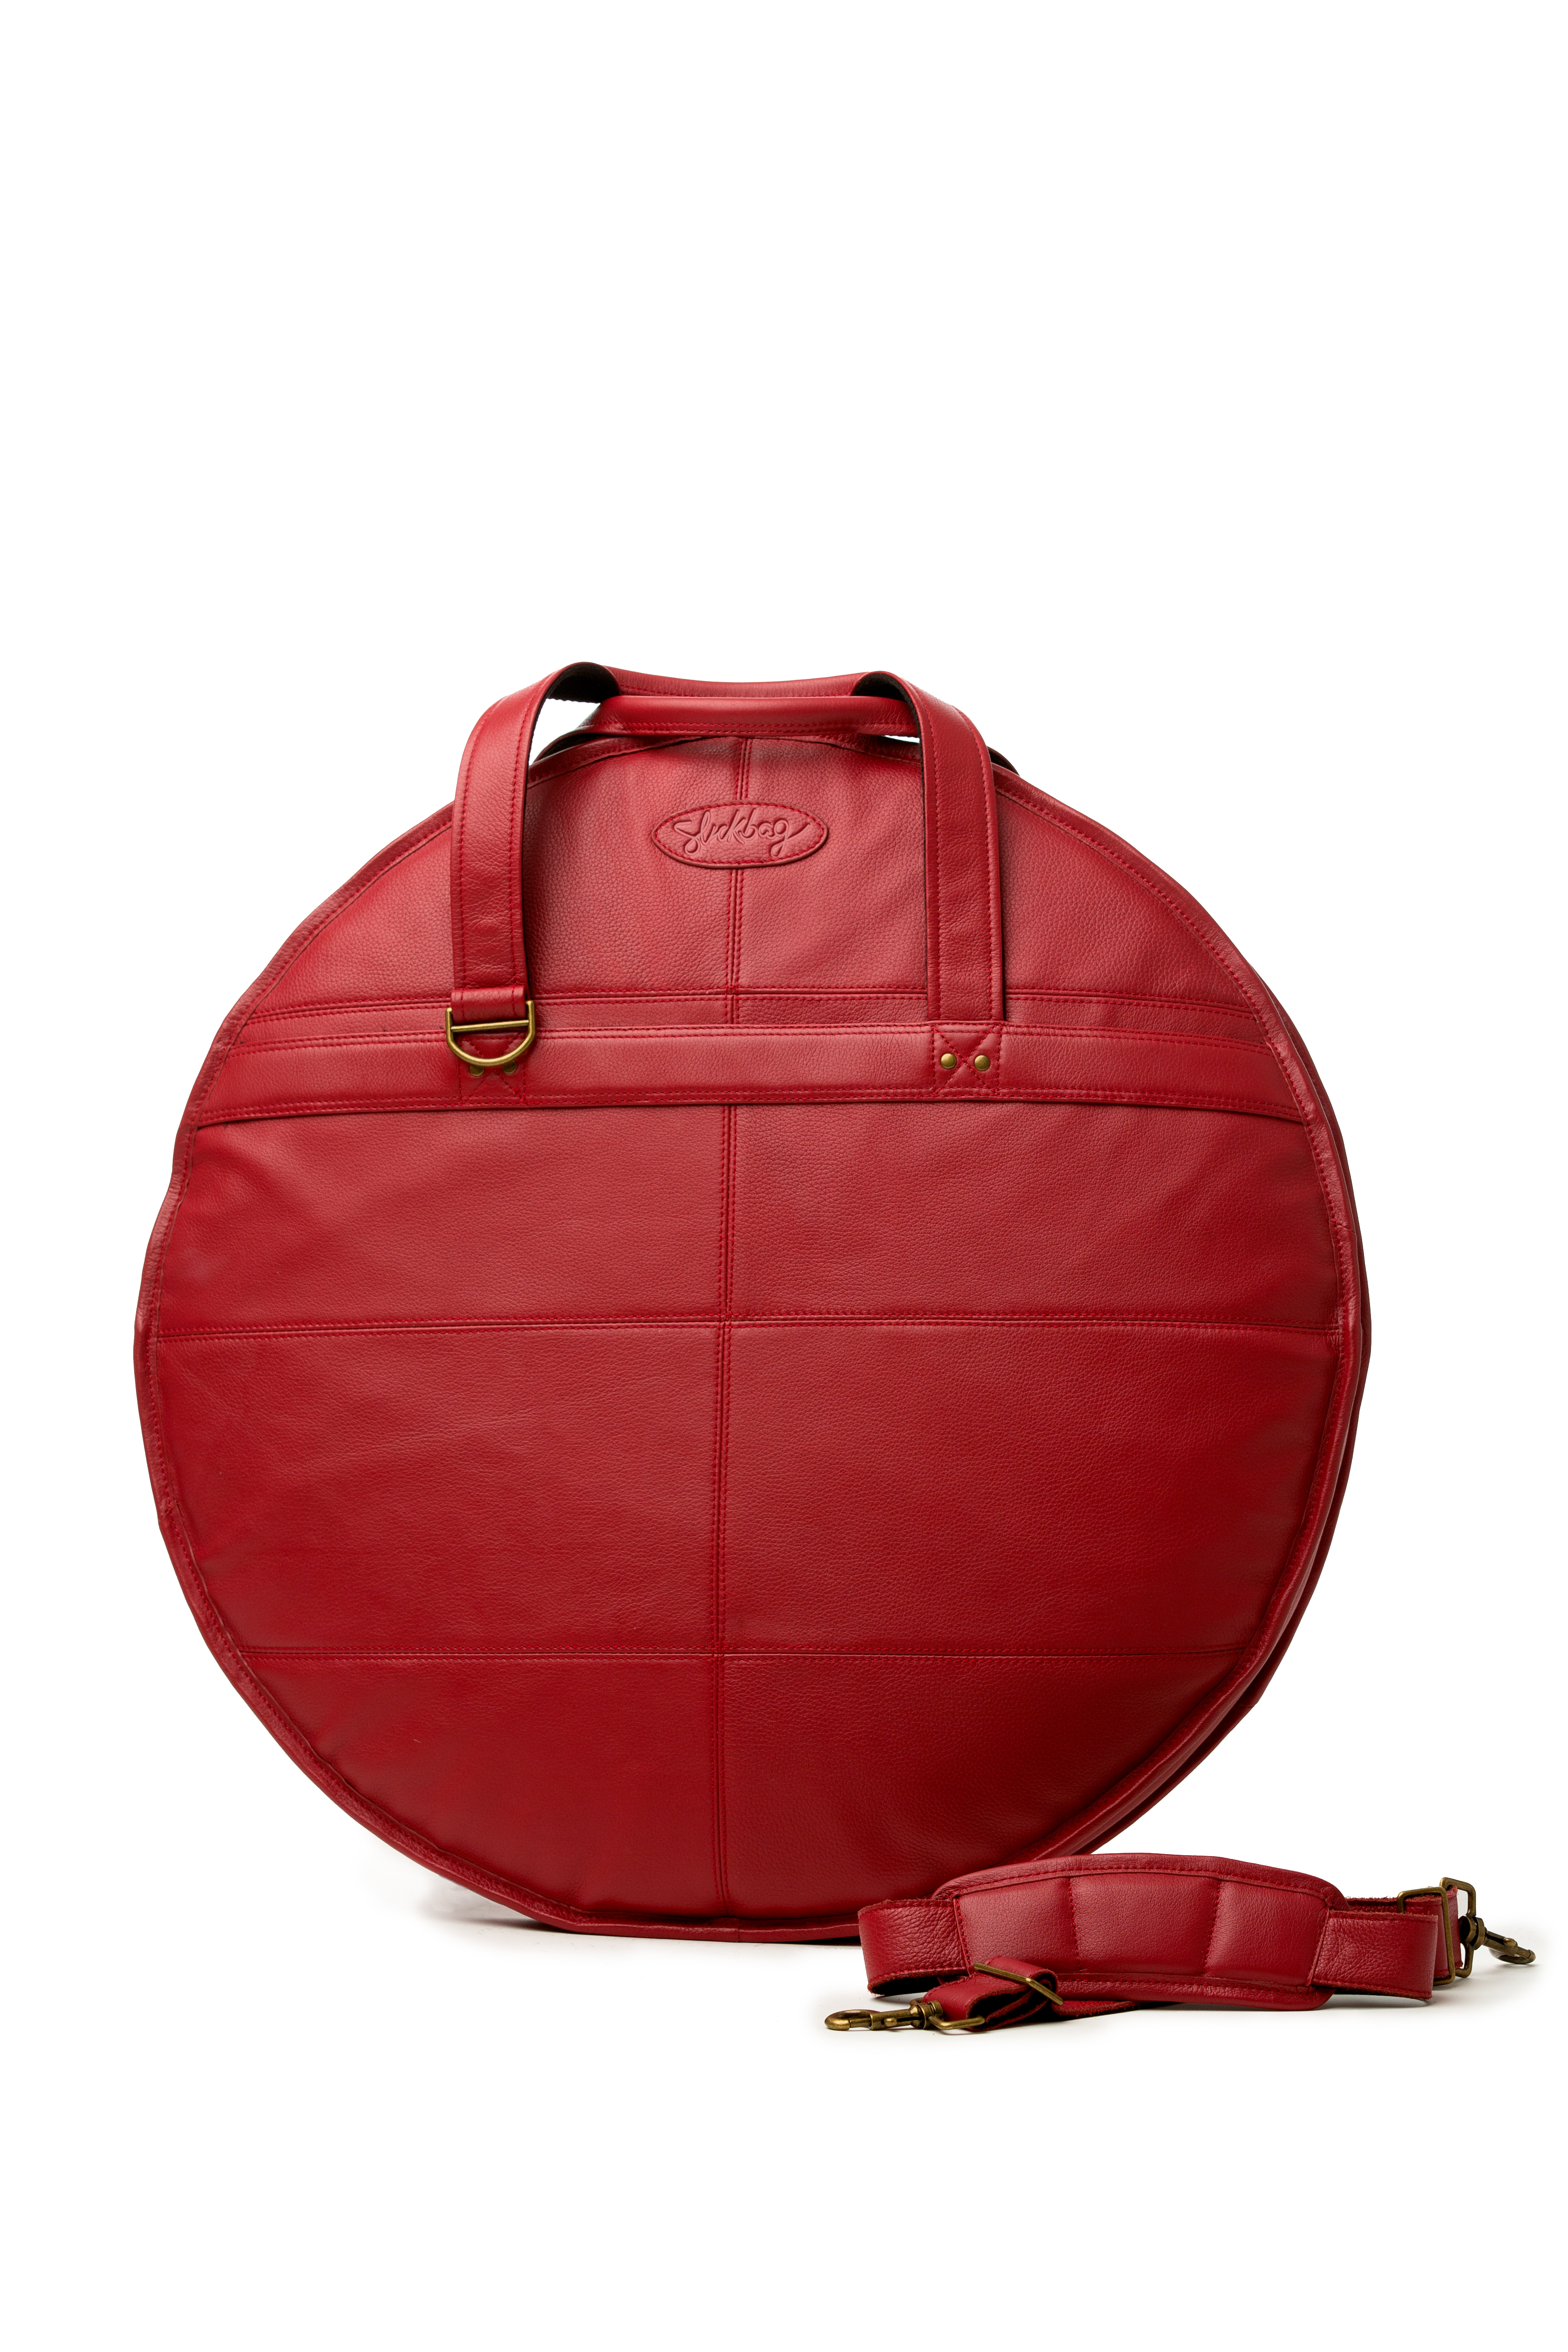 Real Leather Cymbal bag - Slickbag